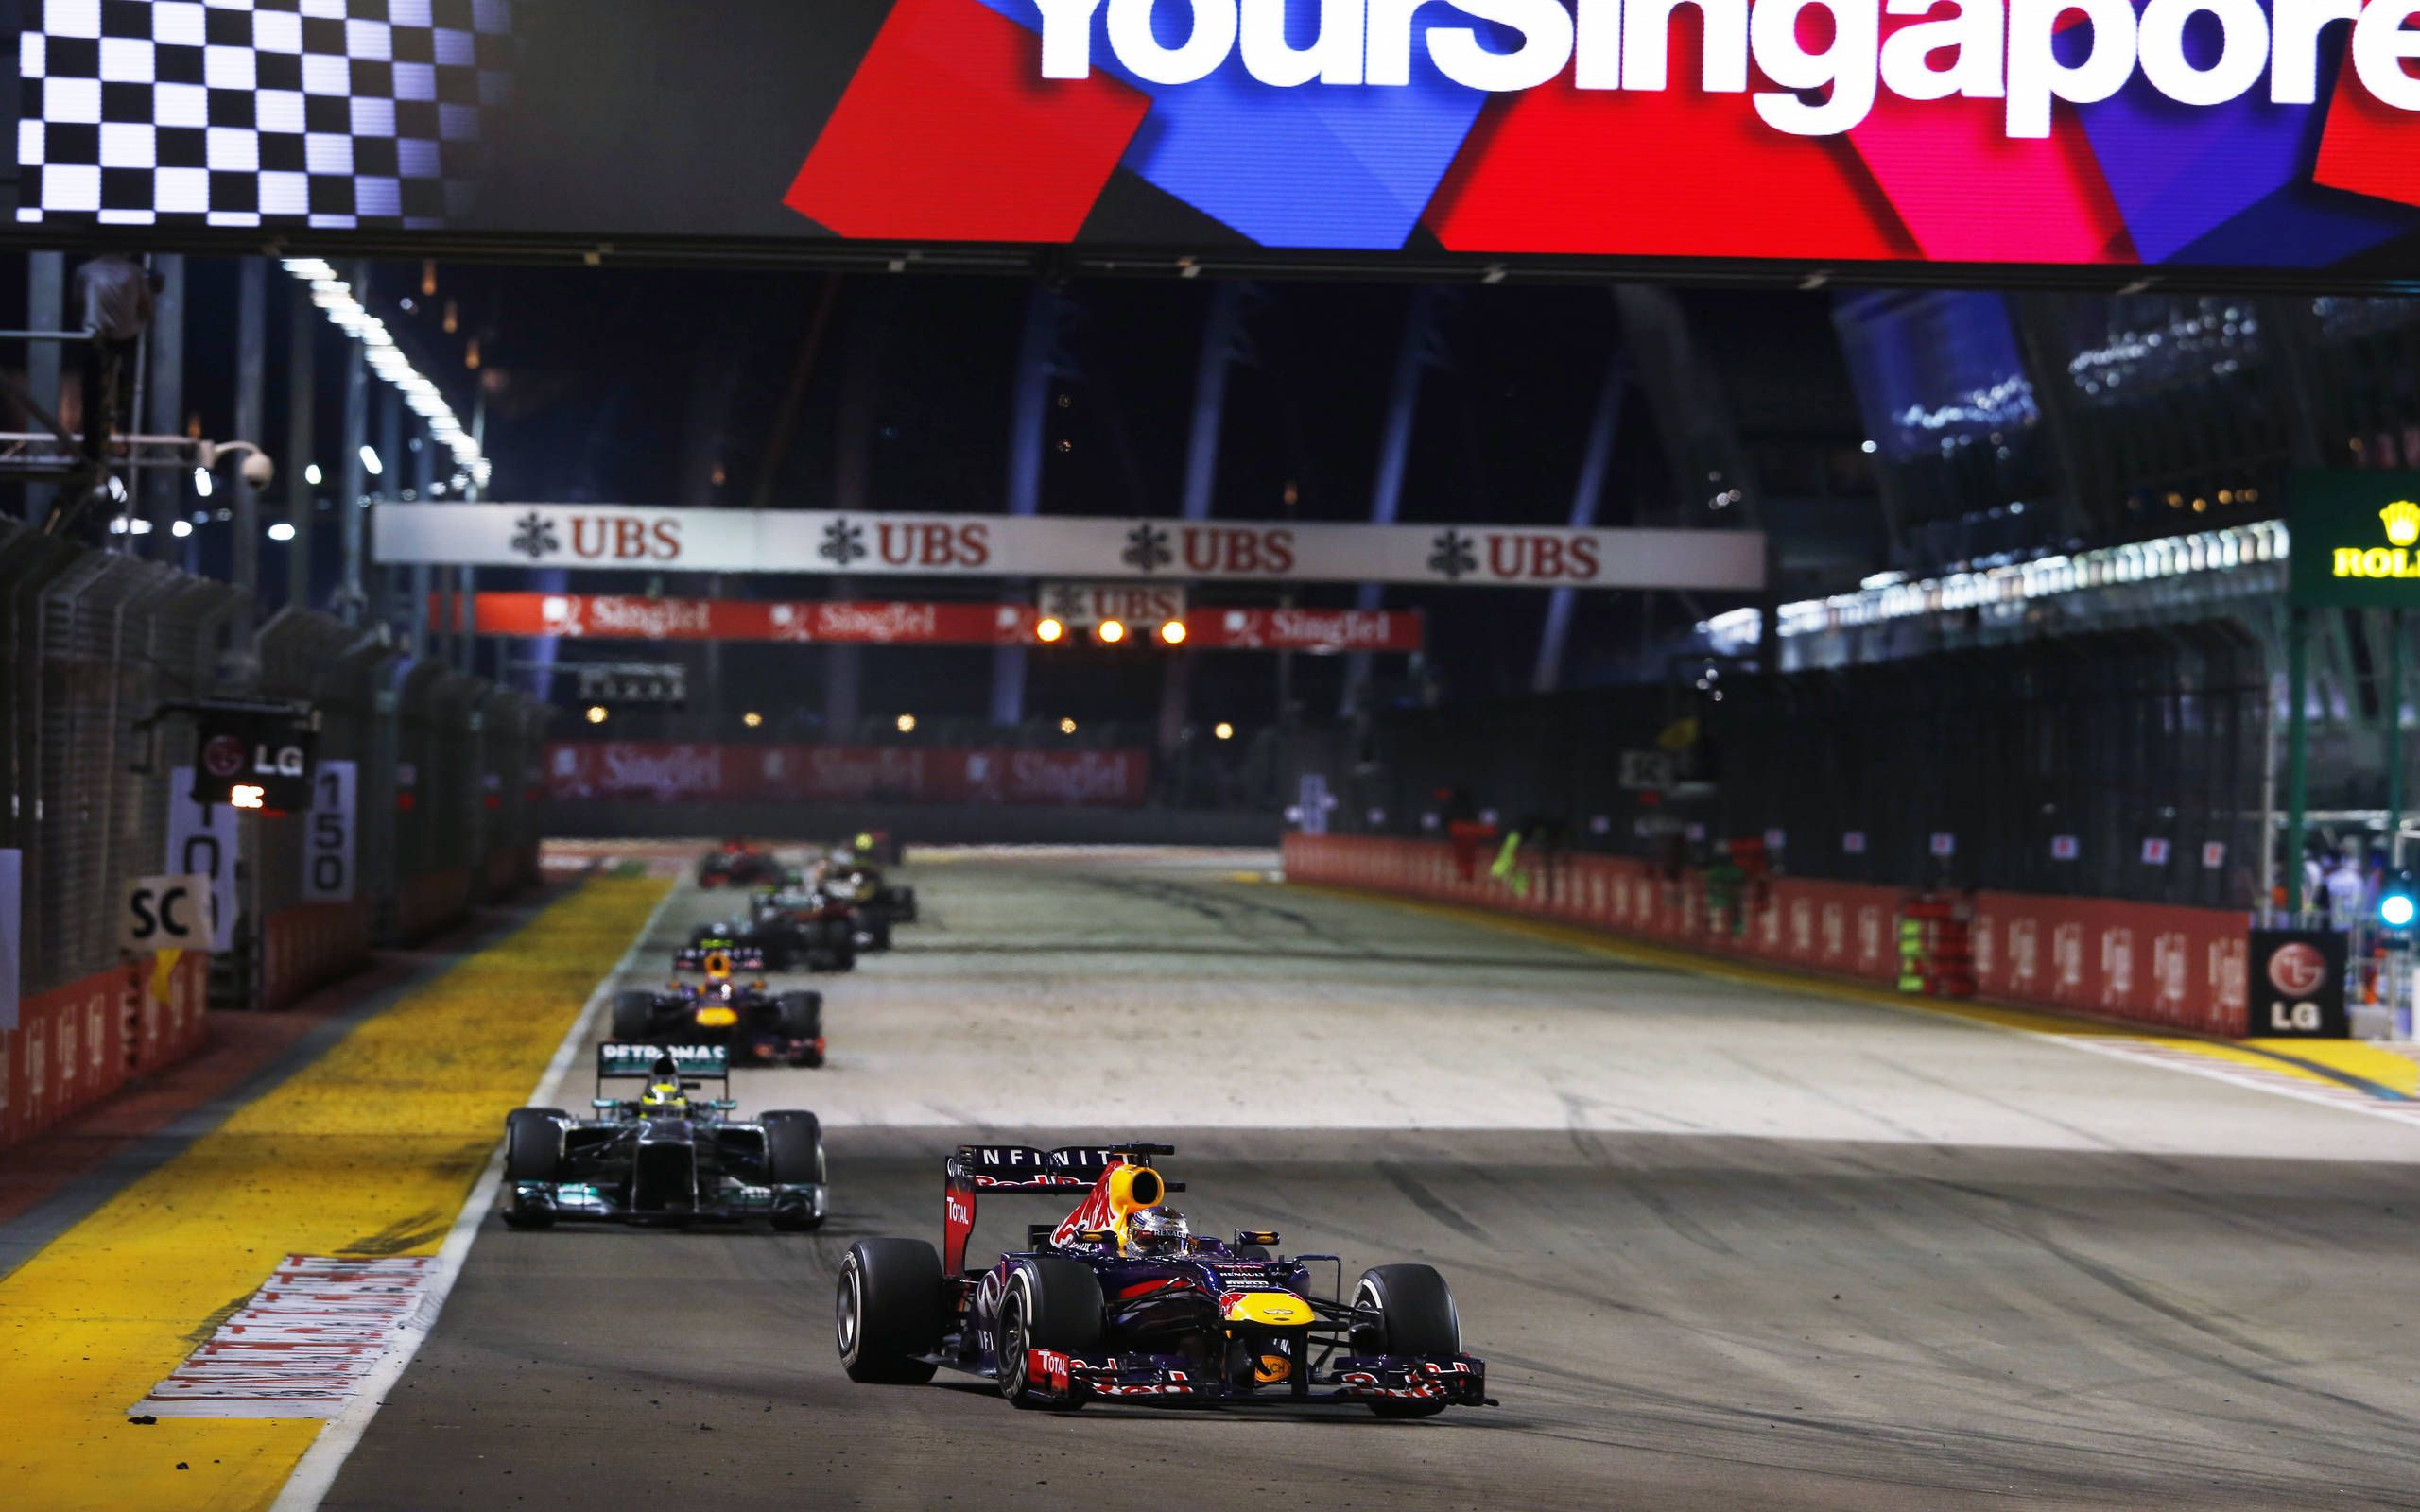 Formula One enters radio silence era in Singapore